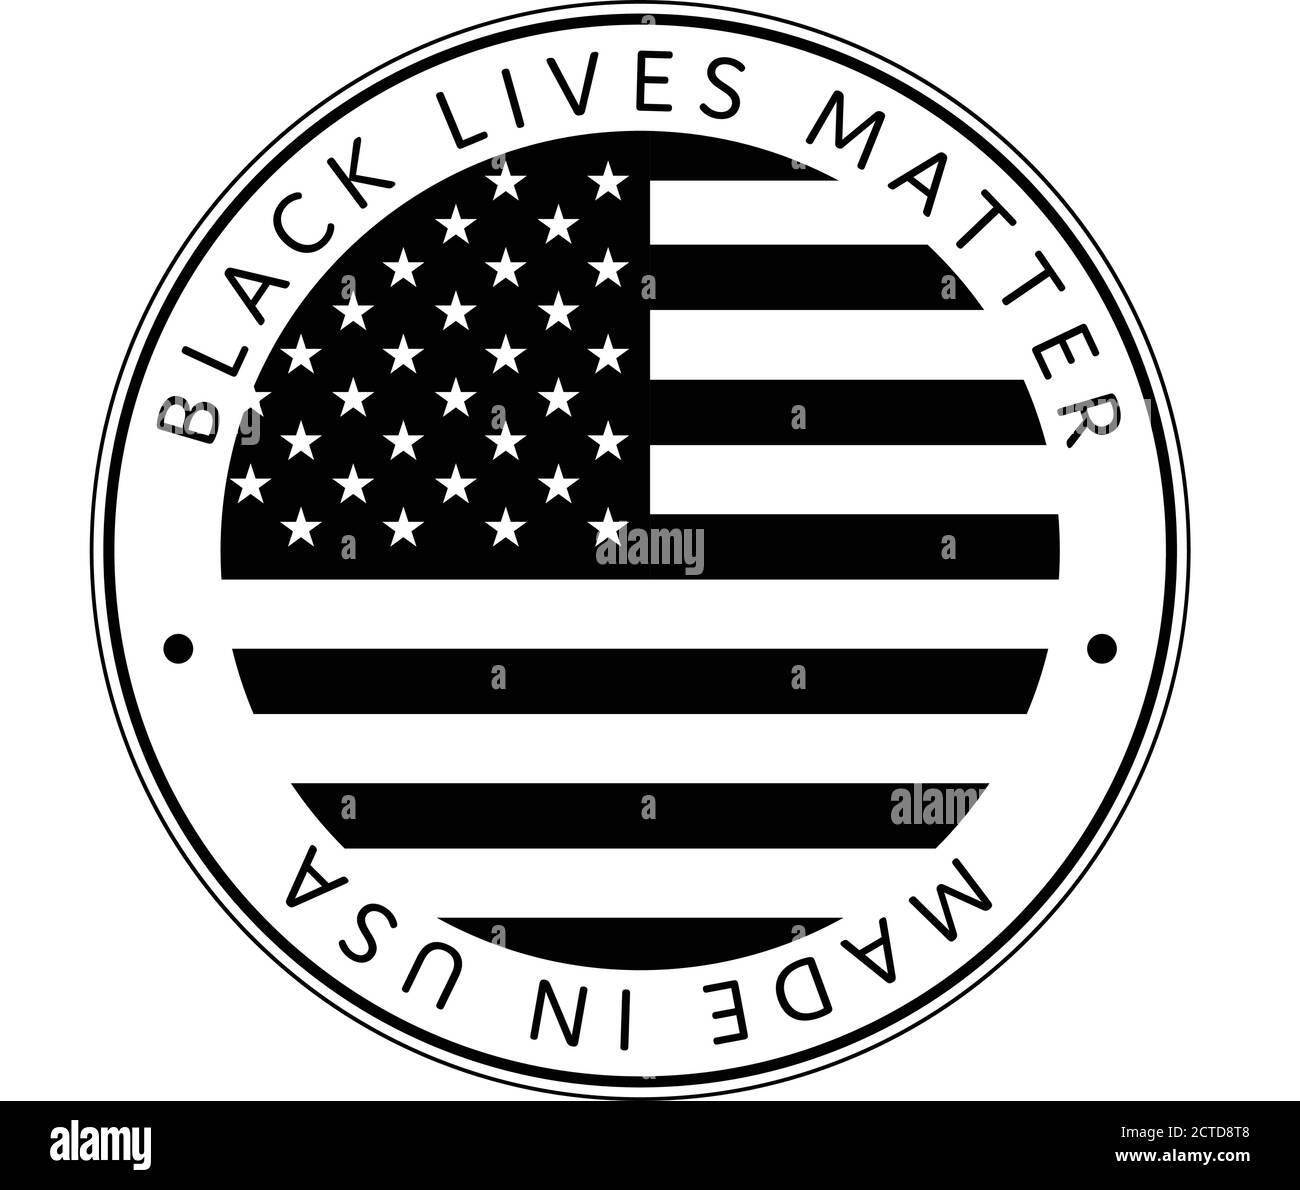 Amerikanischer Nationalfeiertag. Made in USA Icon. US Flaggen mit amerikanischen Sternen, Streifen und Nationalfarben. Schwarze Leben sind wichtig. Stock Vektor